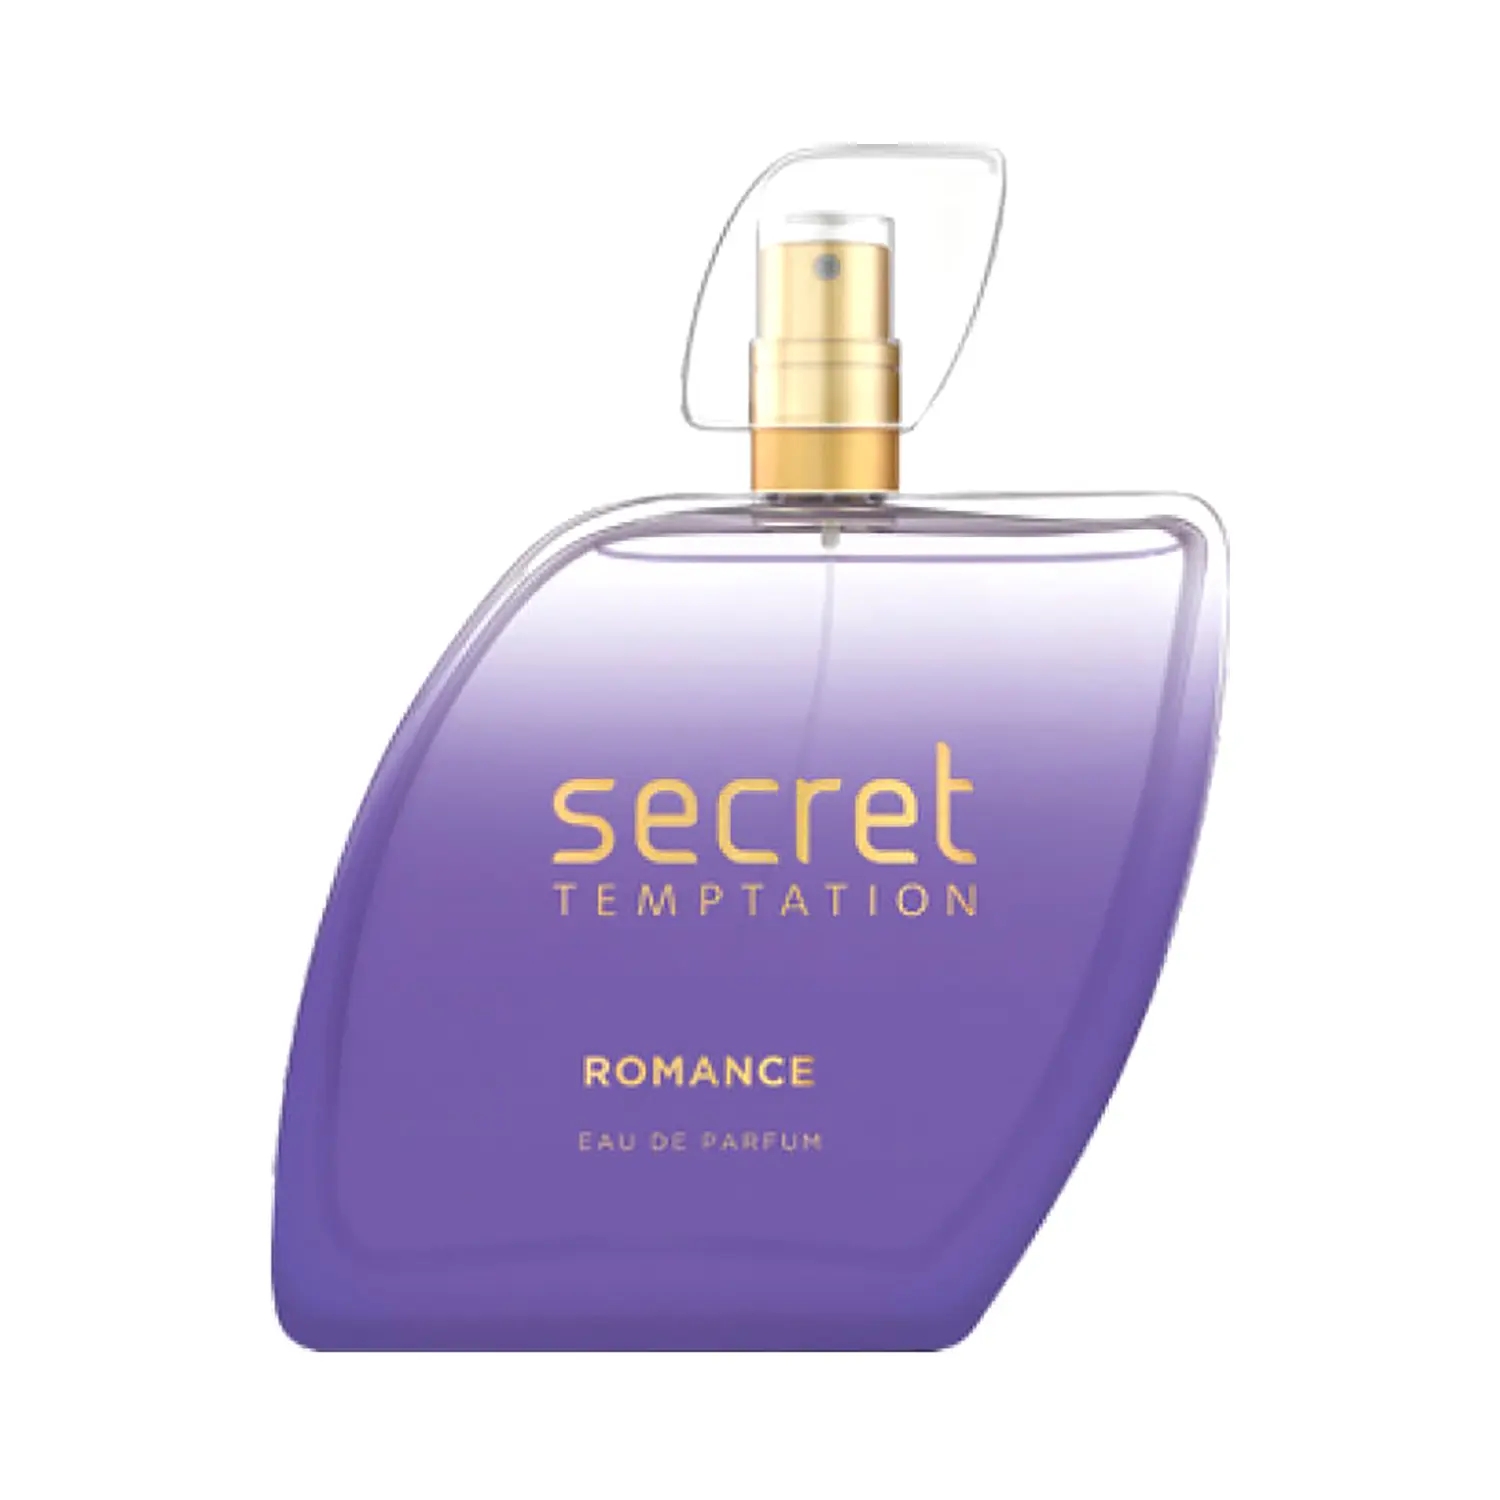 Secret Temptation Romance Eau De Parfum (100ml)